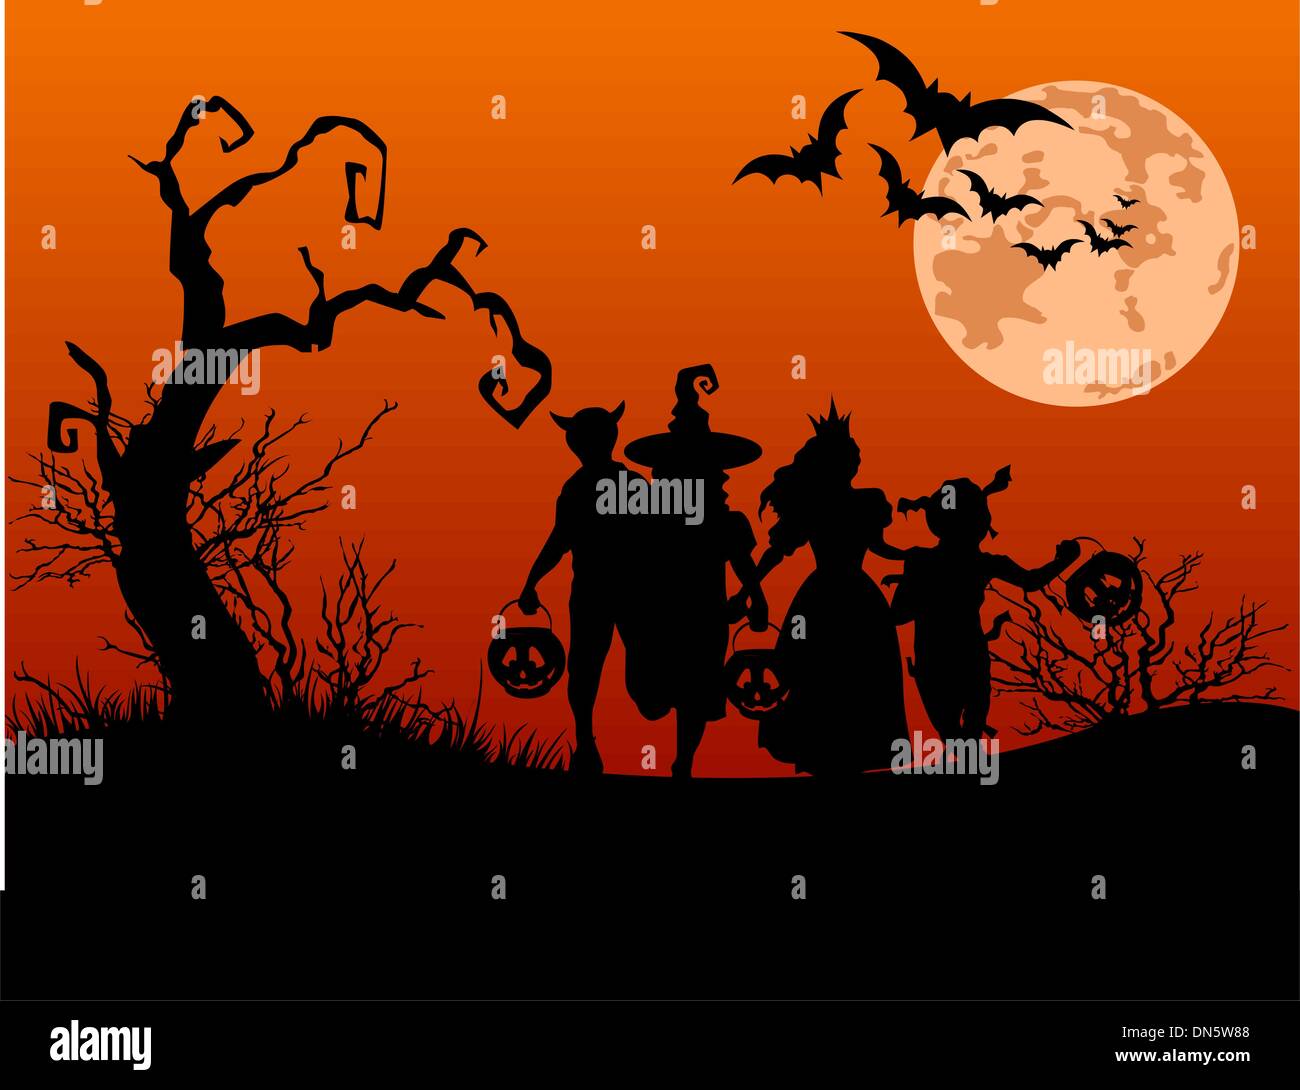 Fond d'Halloween avec des silhouettes d'enfants tour ou traitement Illustration de Vecteur